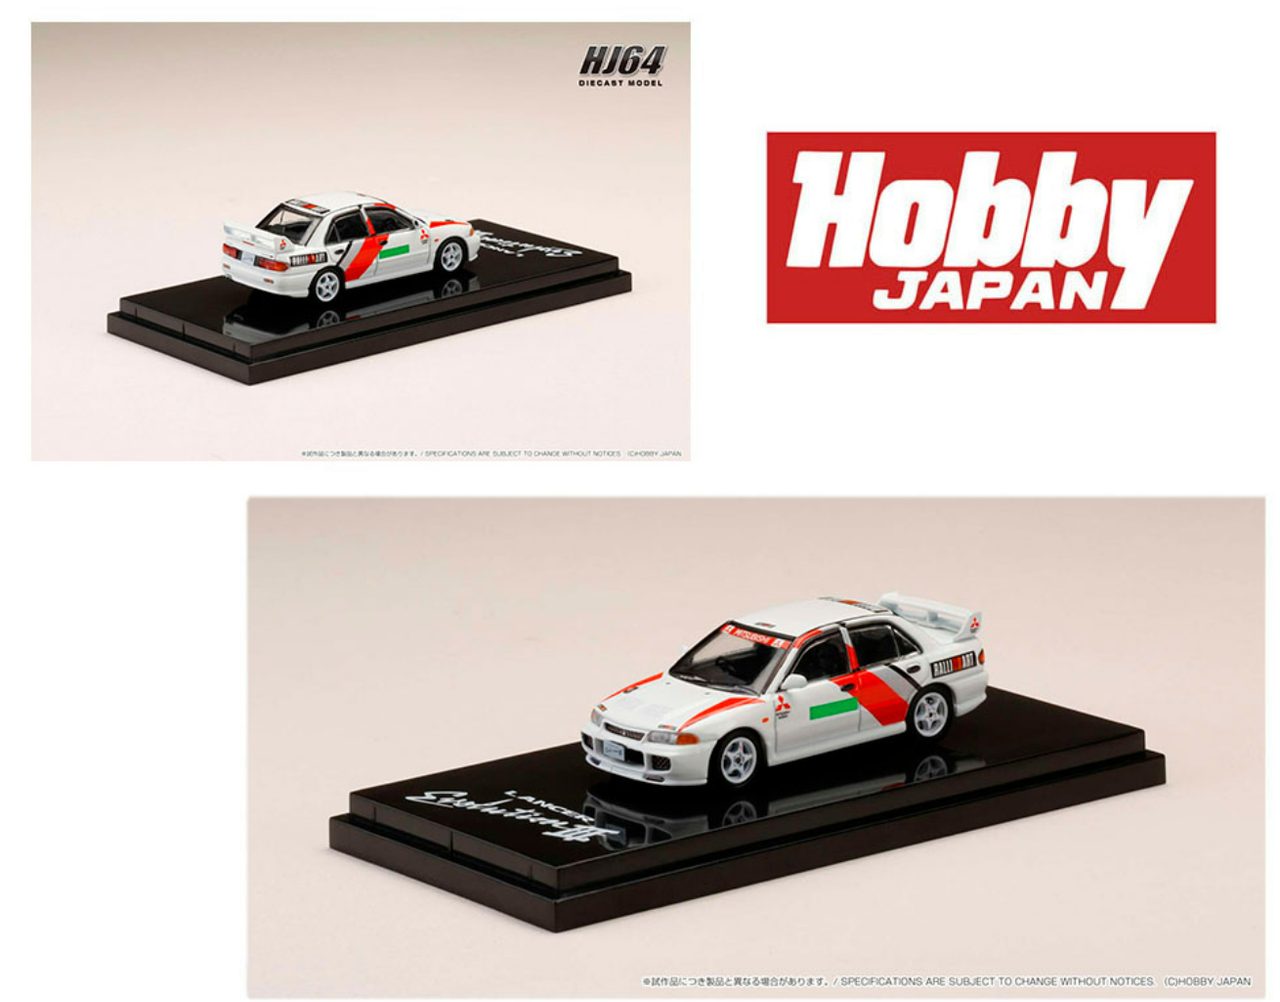 1/64 Hobby Japan Mitsubishi Lancer RS Evolution III GR. A Promotion Diecast Car Model